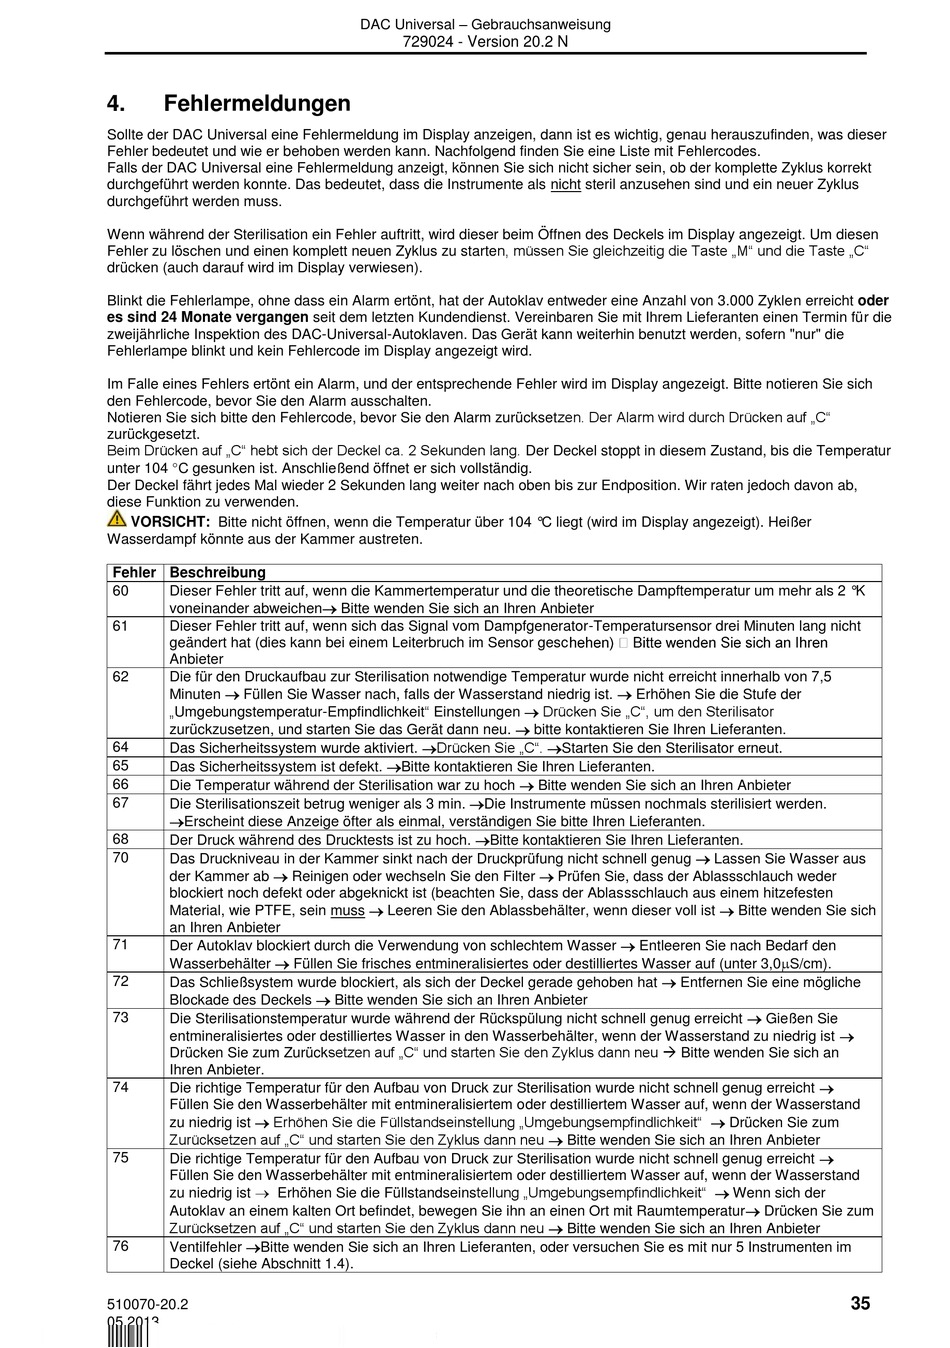 Fehlermeldungen - Sirona DAC Universal Gebrauchsanweisung [Seite 35 ...